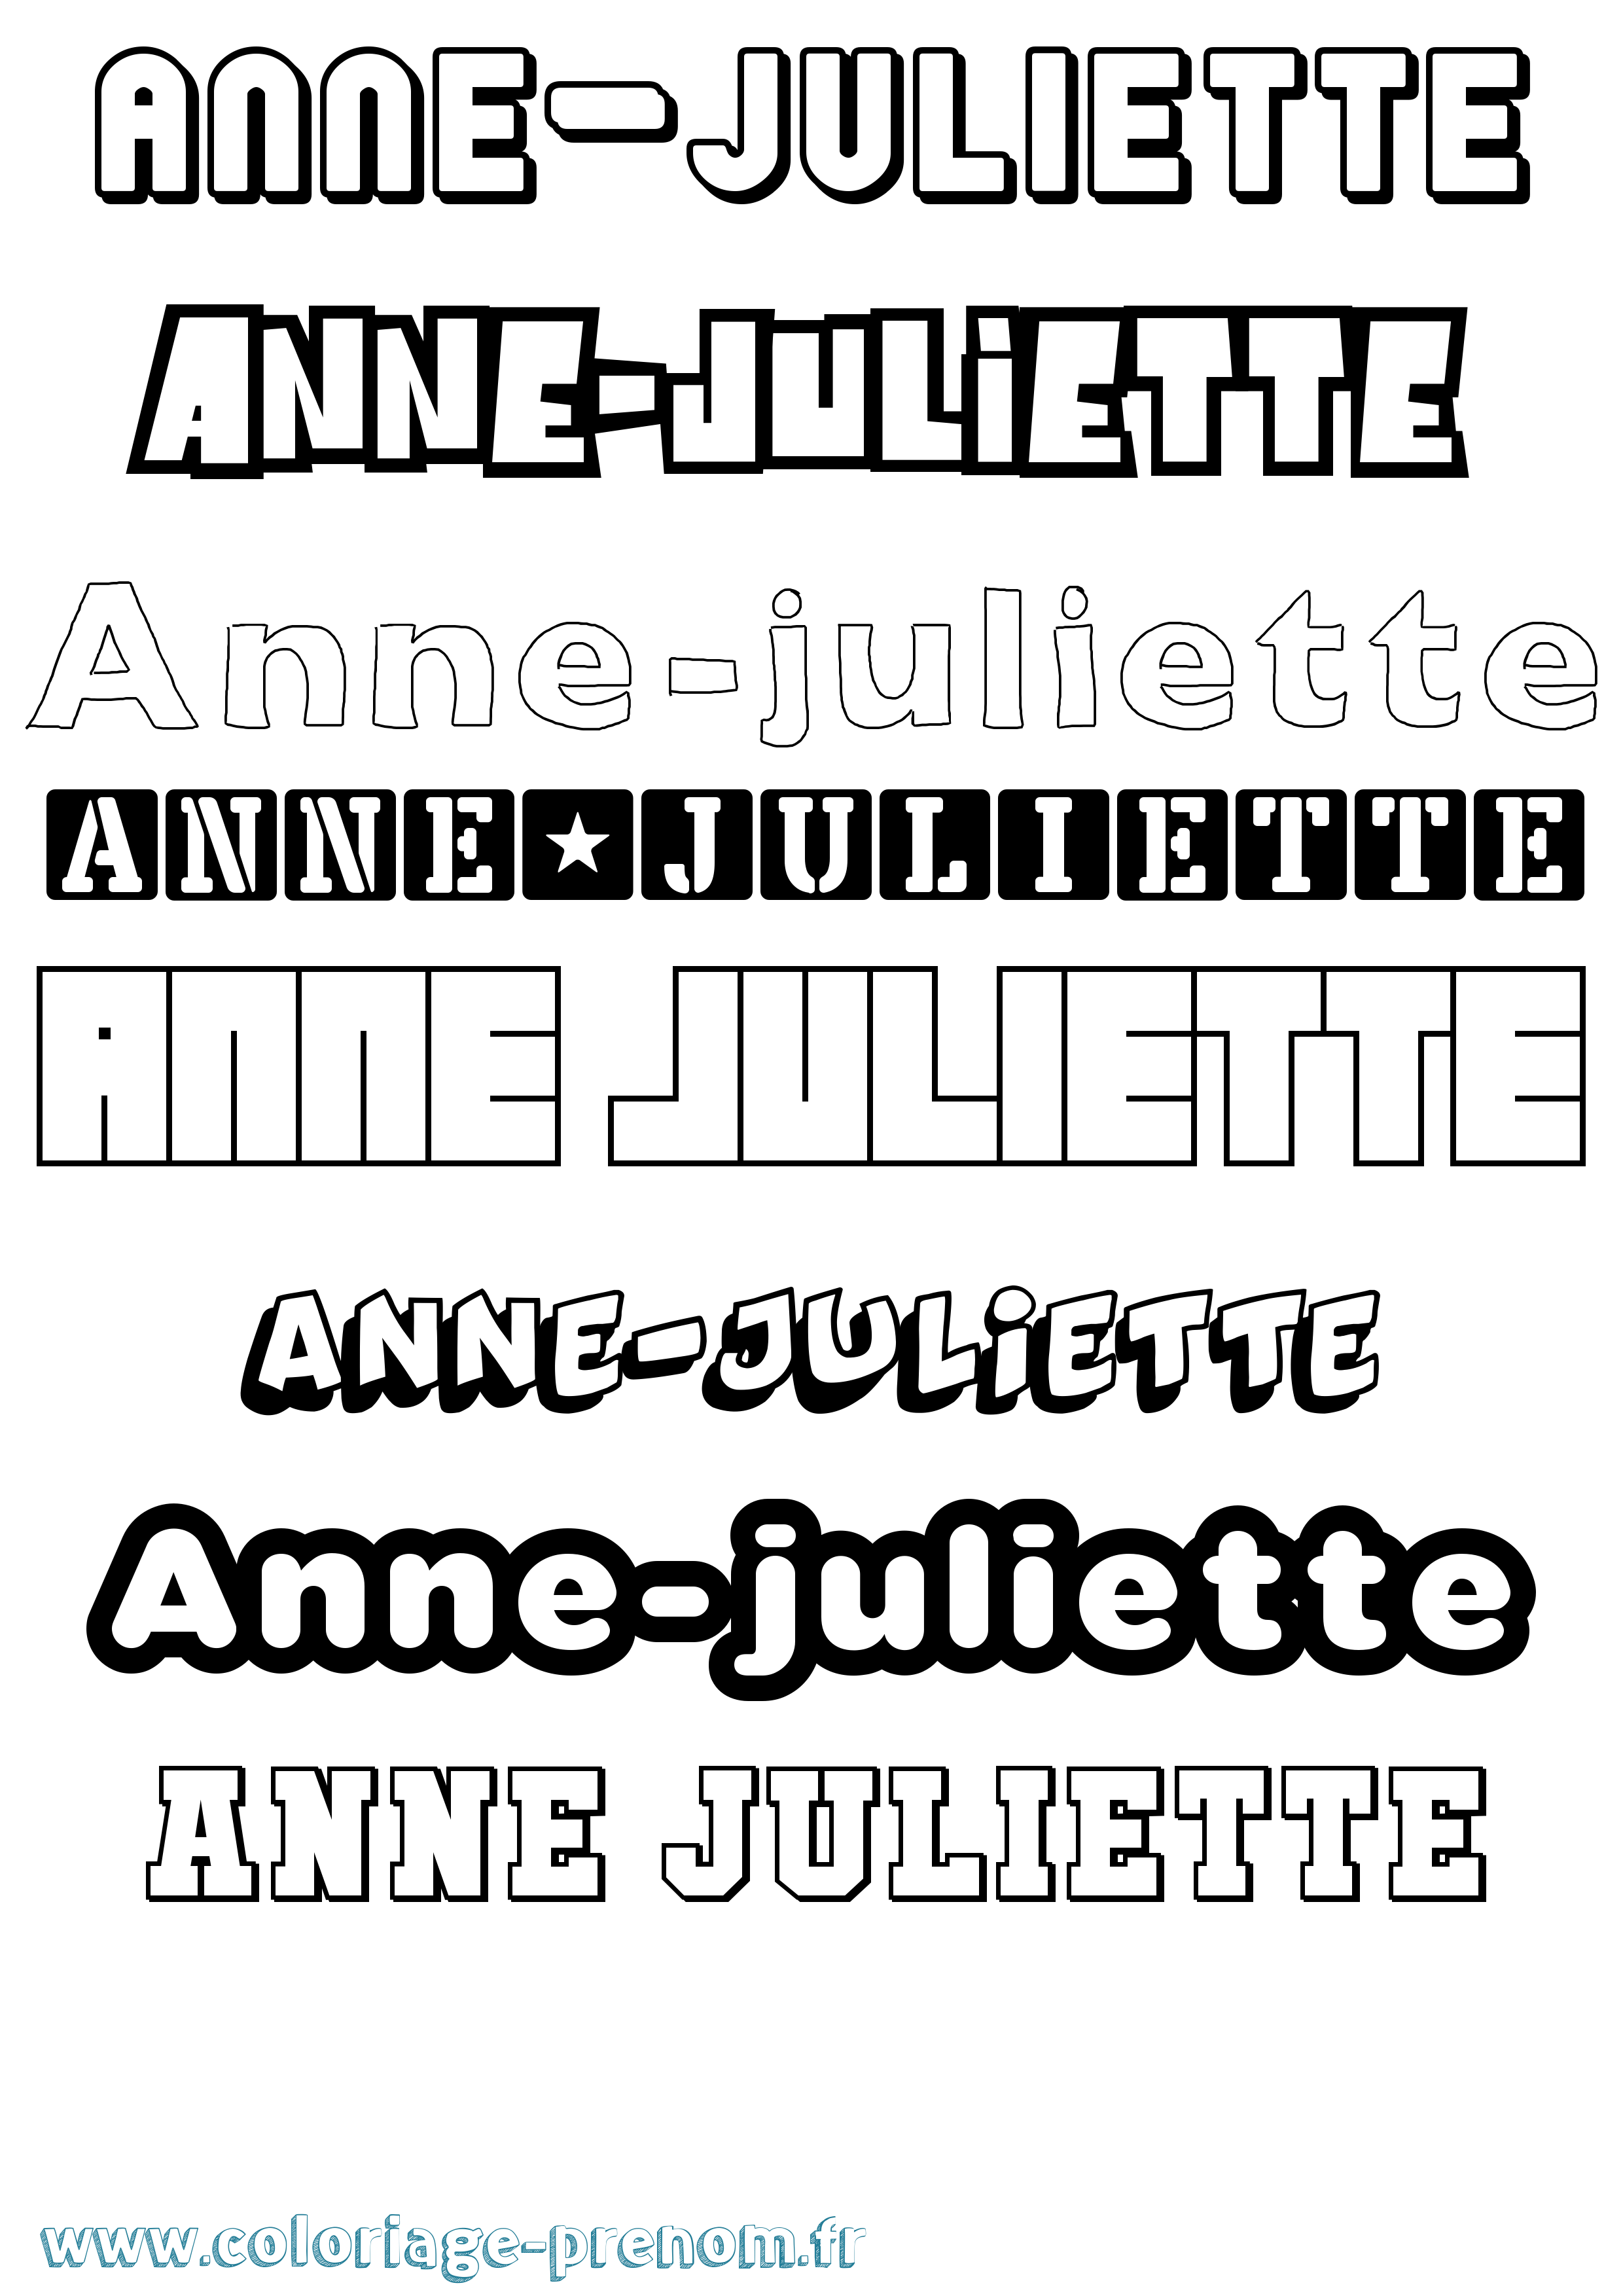 Coloriage prénom Anne-Juliette Simple